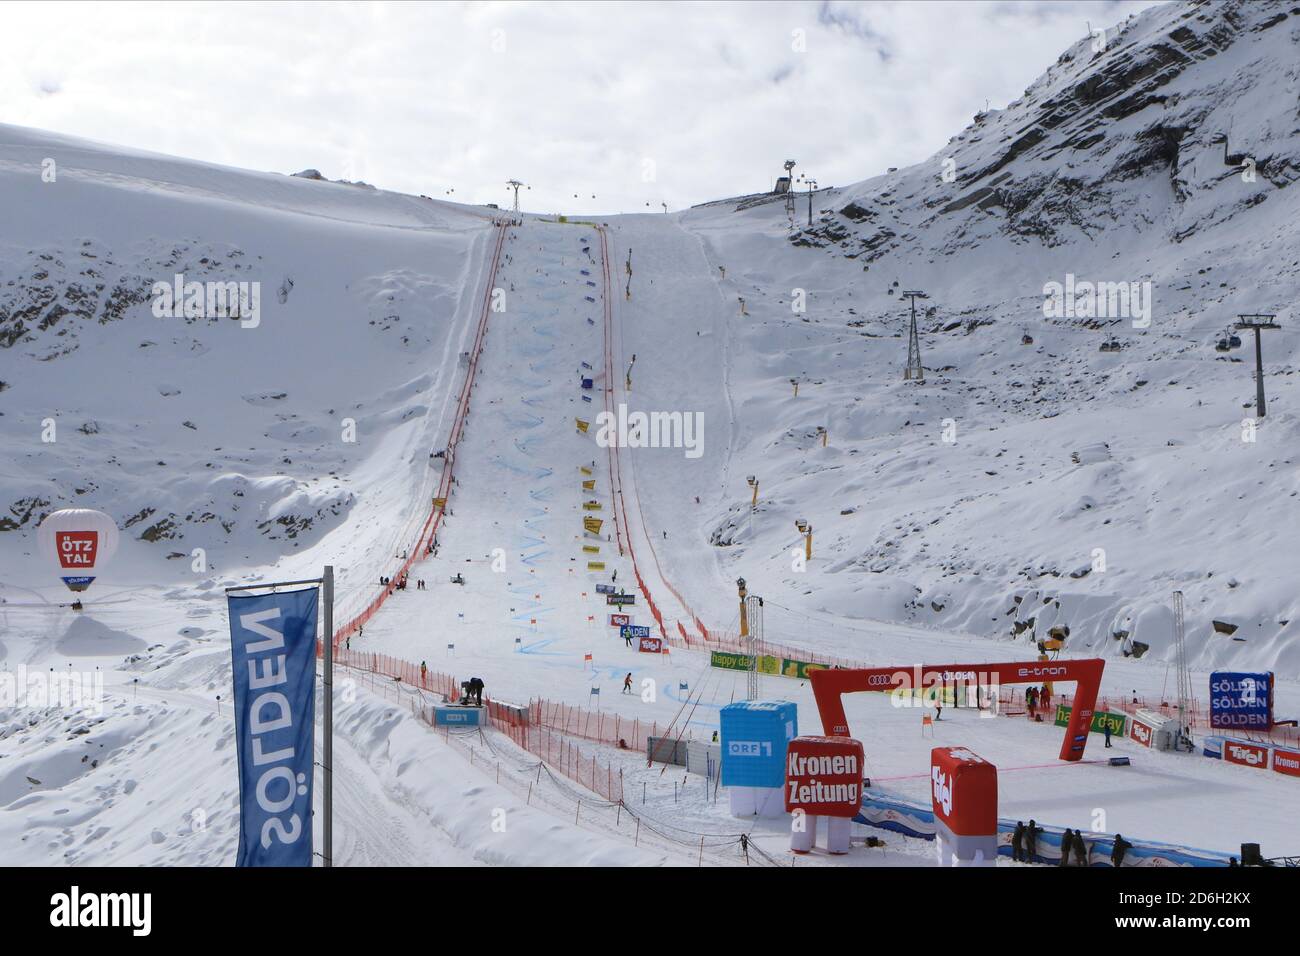 Rettenbachferner, Soelden, Autriche. 17 octobre 2020. FIS coupe du monde ski alpin ski alpin ski alpin; la pente du glacier crédit: Action plus Sports/Alamy Live News Banque D'Images